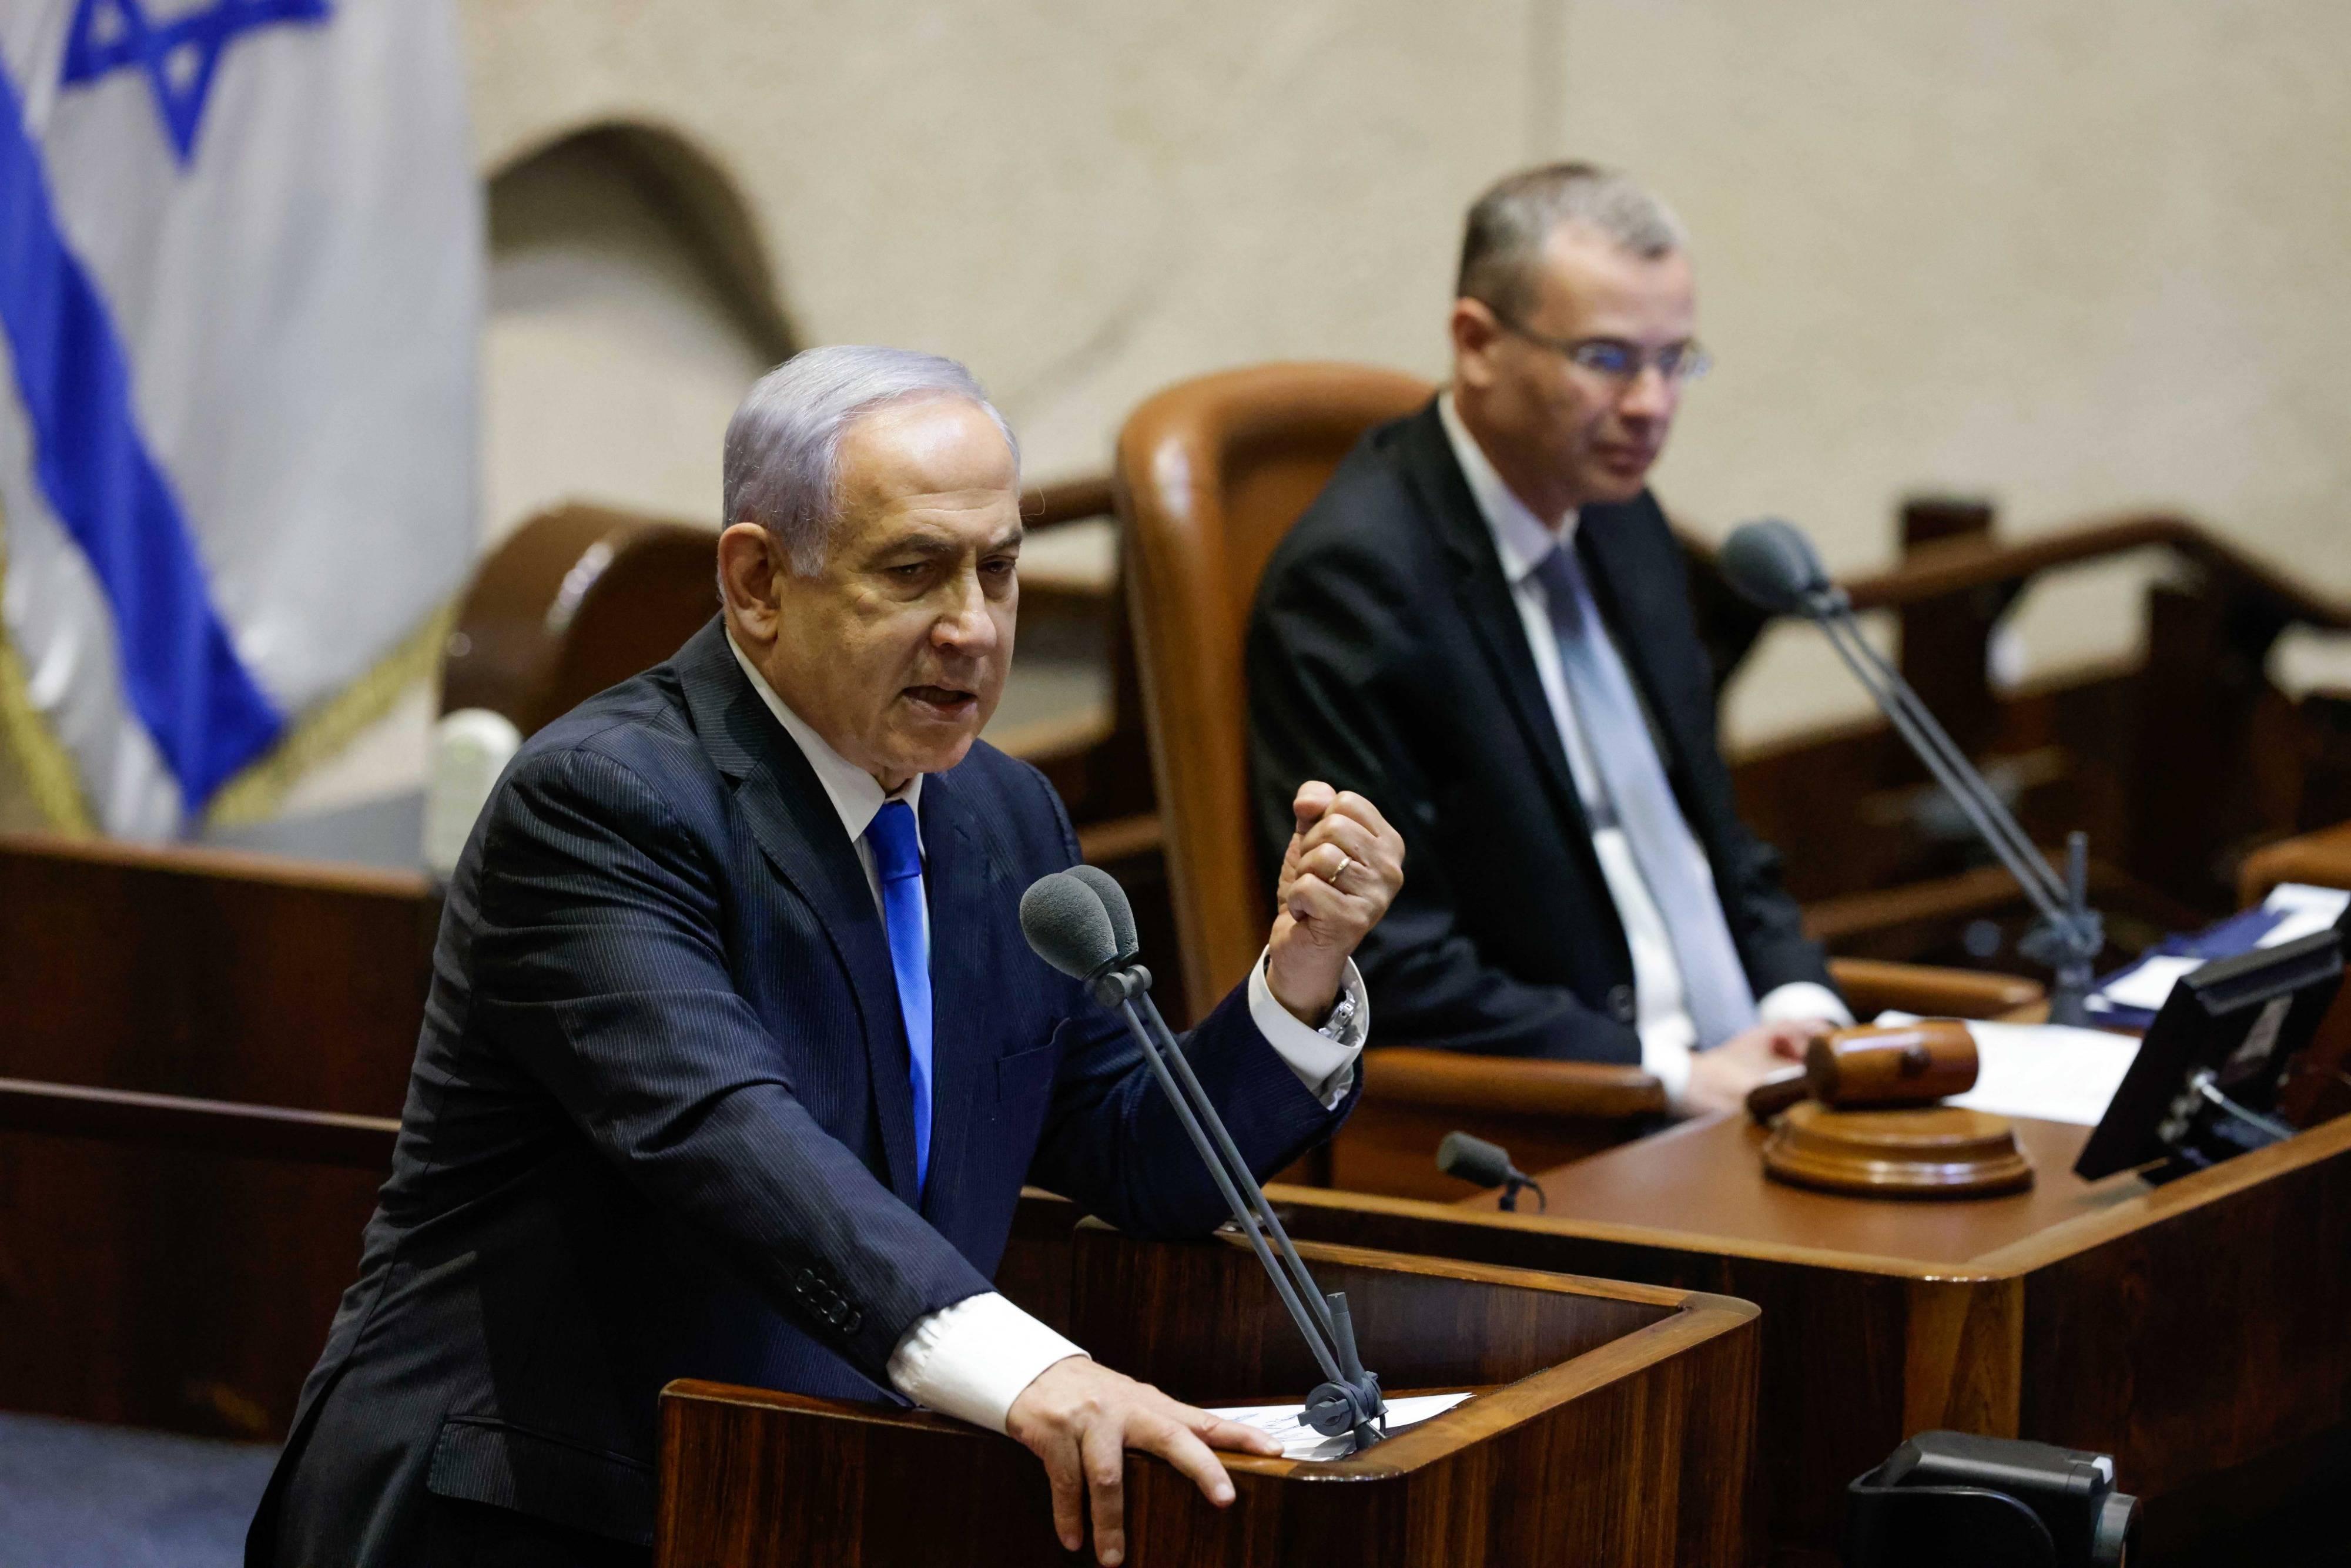 以色列议会以色列议会 以色列耶路撒冷 编辑类库存照片. 图片 包括有 会议, 乌克兰, 政治, 选择, 政府 - 64212573